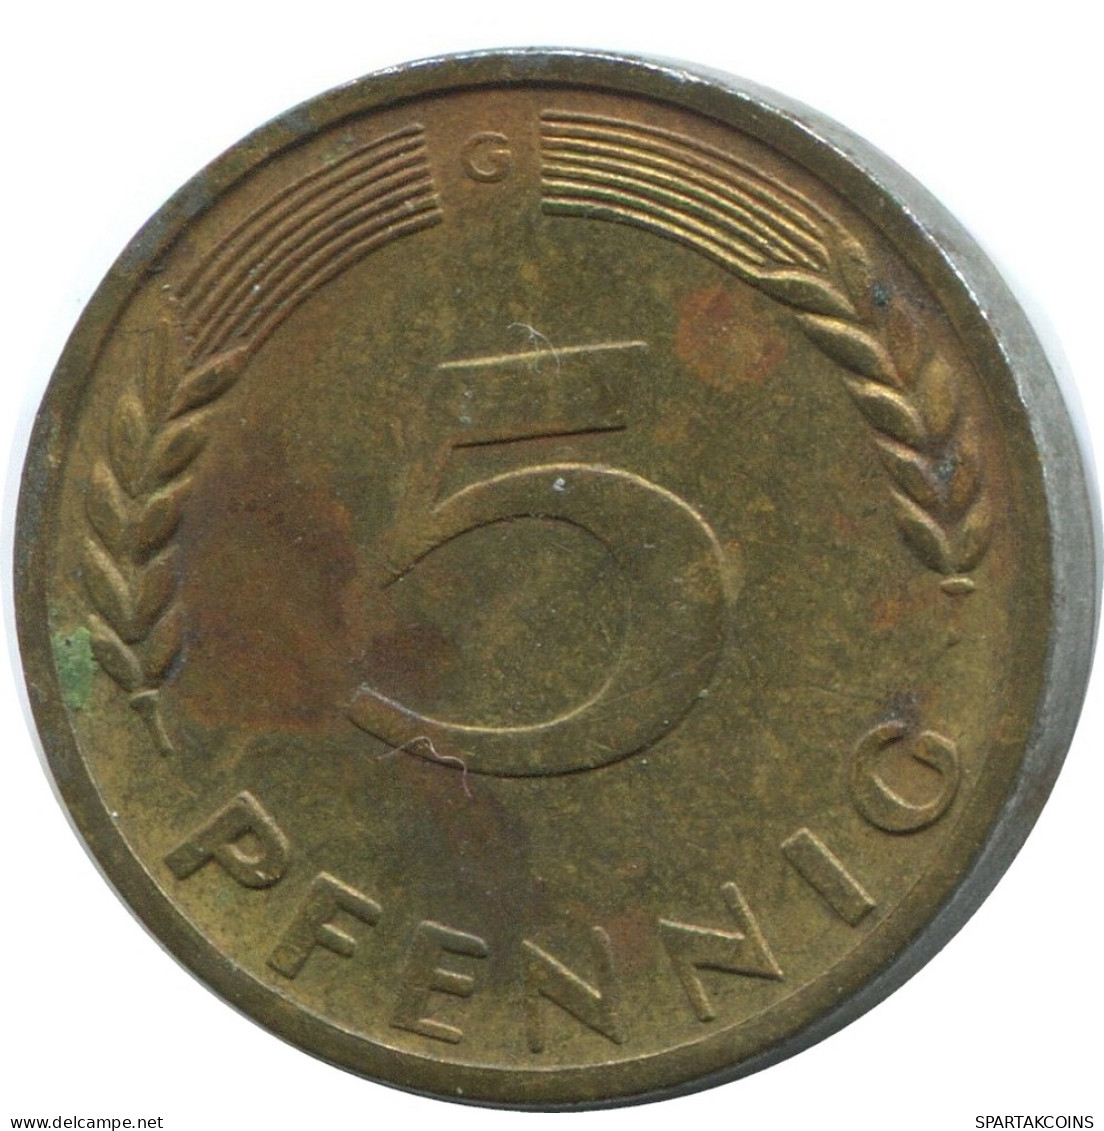 5 PFENNIG 1950 G WEST & UNIFIED GERMANY Coin #AD867.9.U - 5 Pfennig